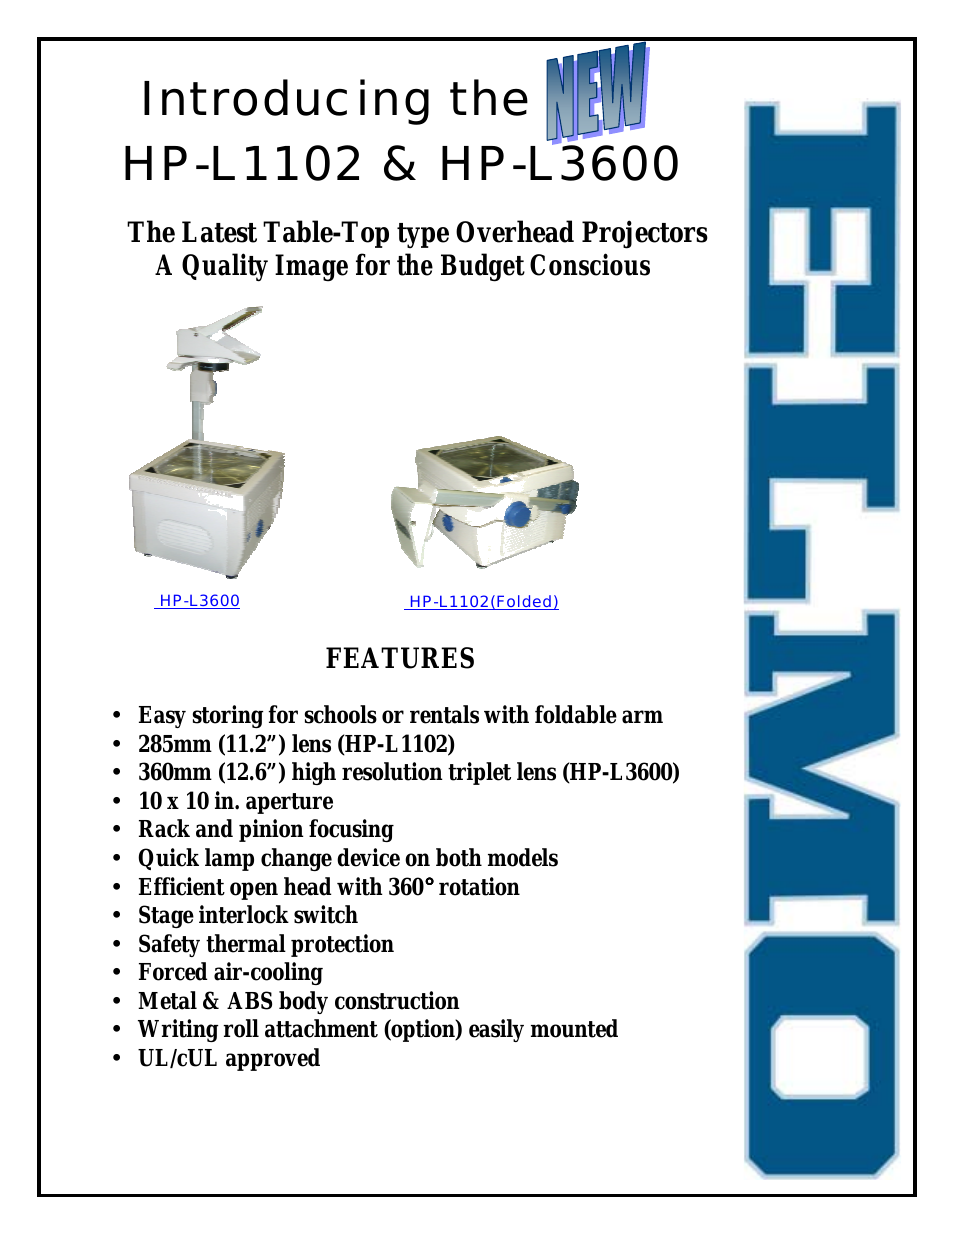 HP-L3600